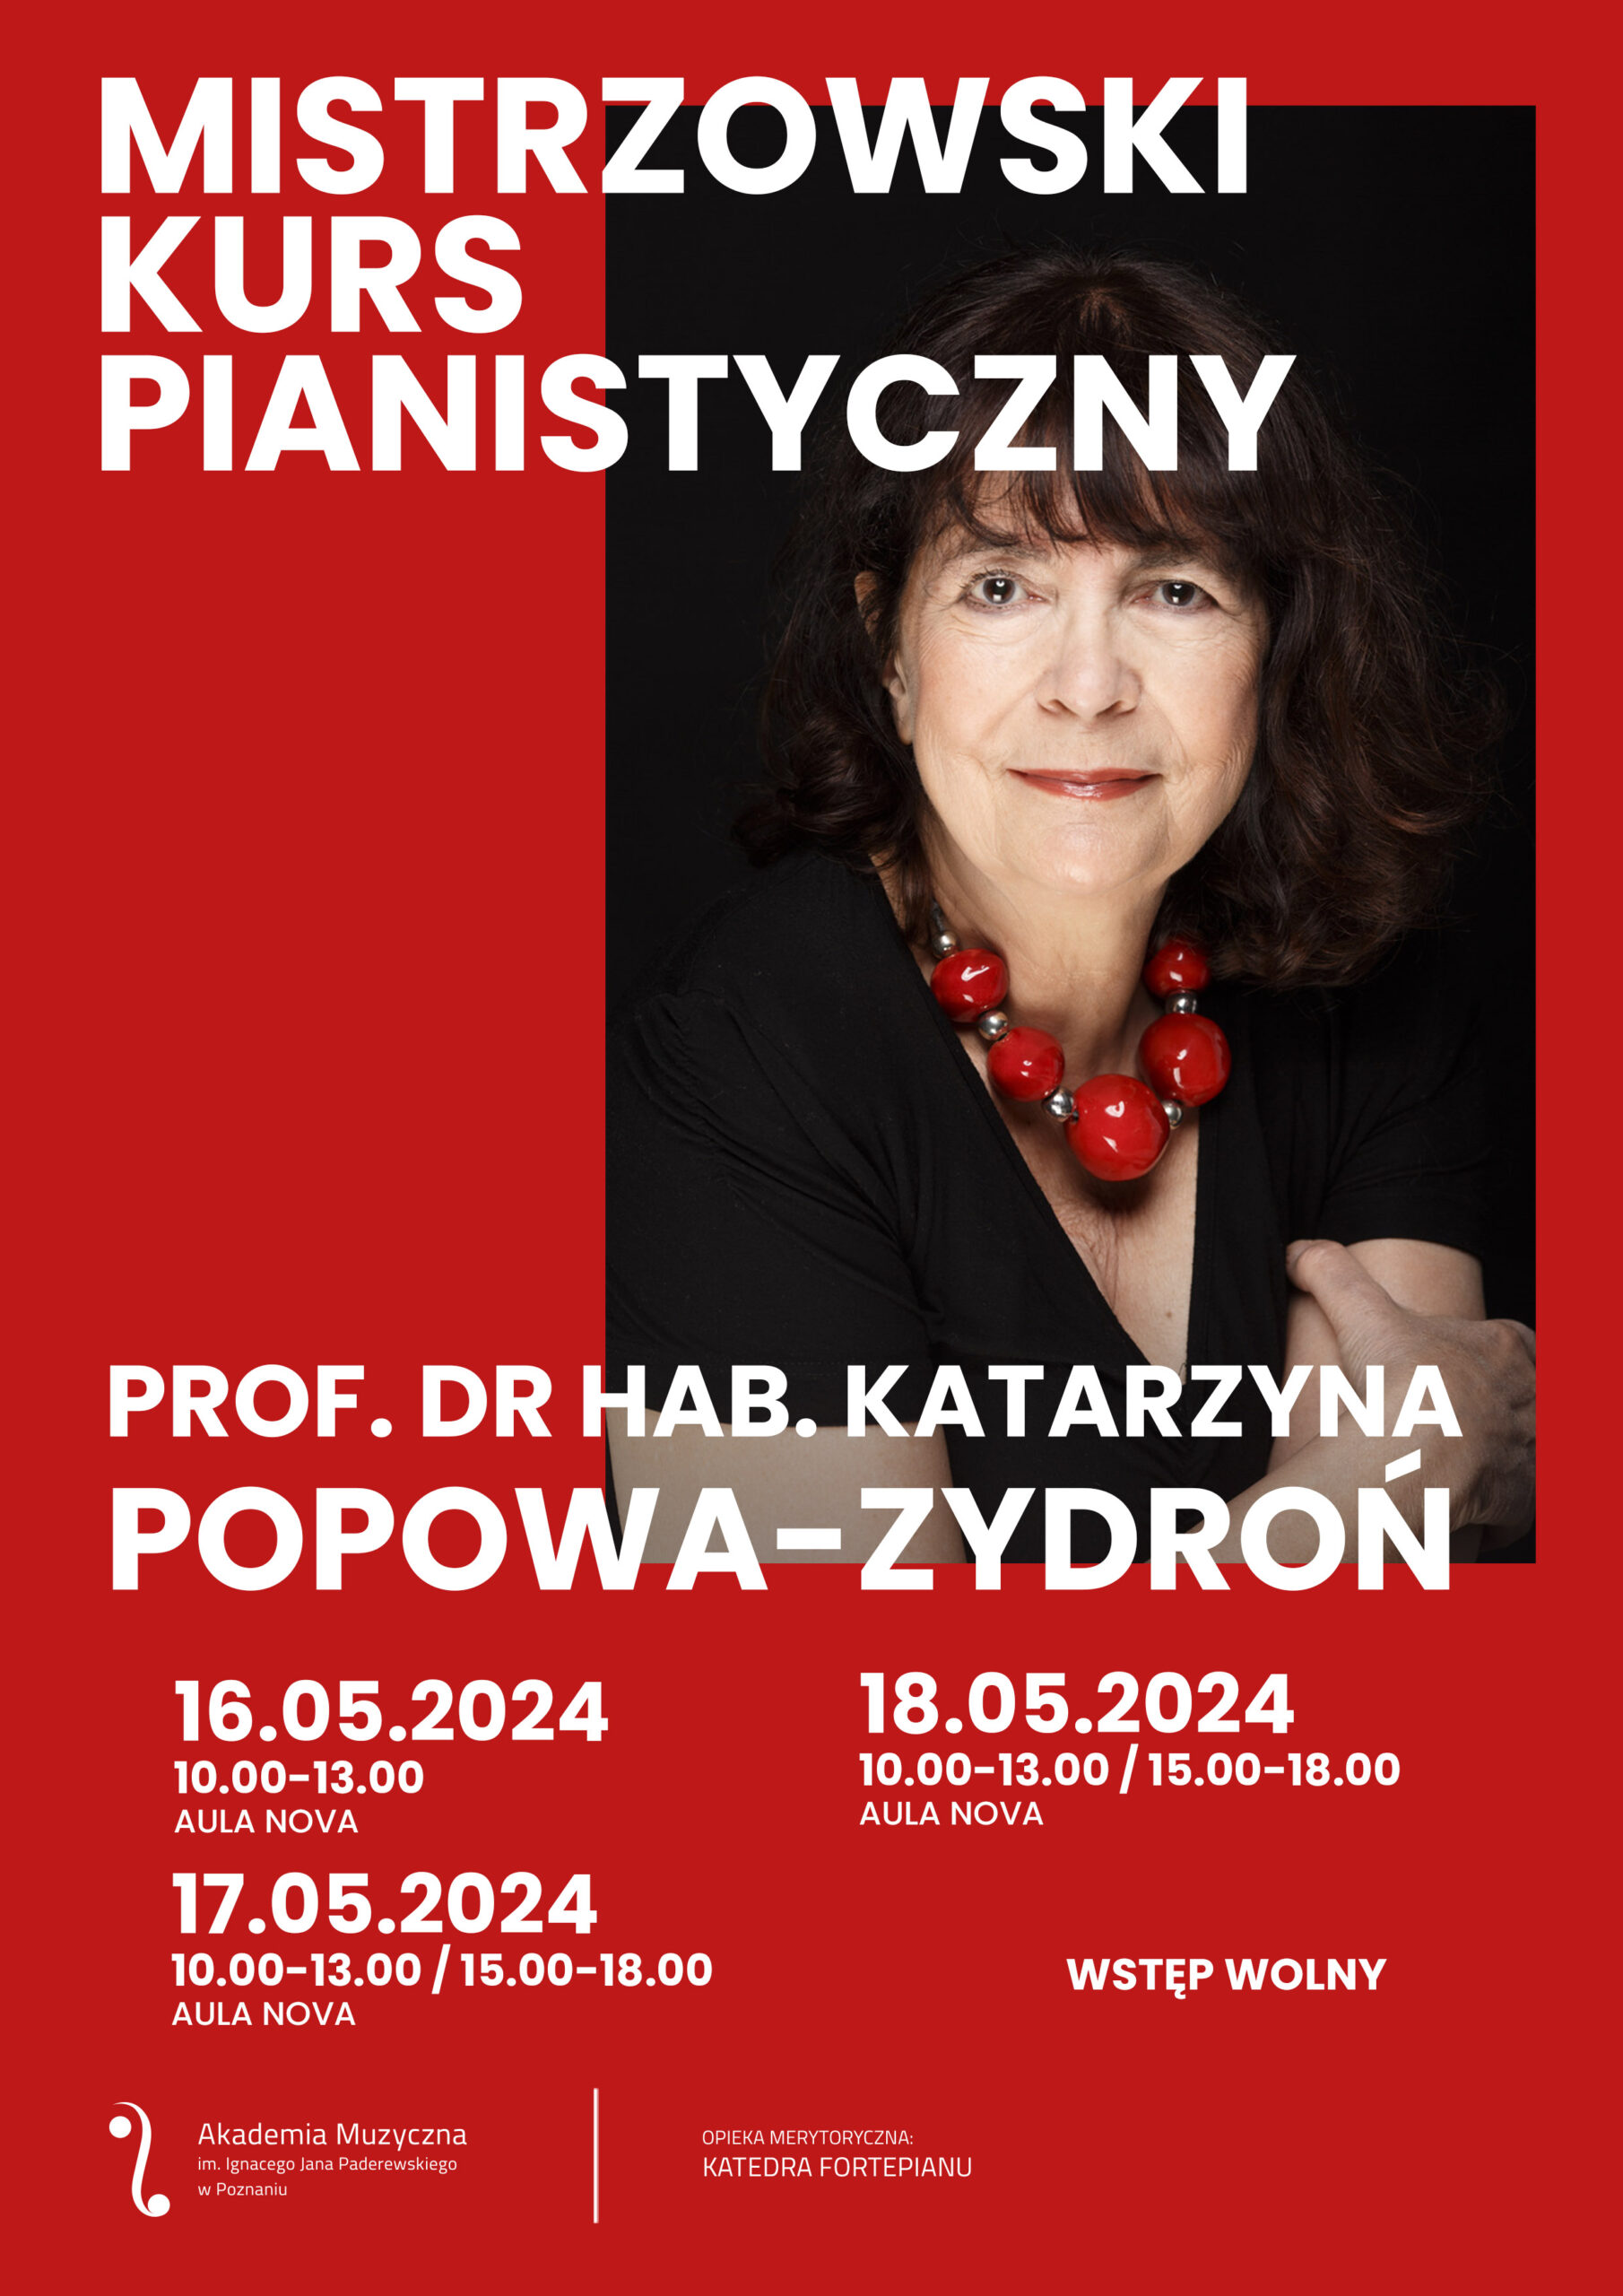 Plakat zawiera informacje i harmonogram na temat kursu pianistycznego prof. Katarzyny Popowej-Zydroń w dniach 16-18 maja 2024